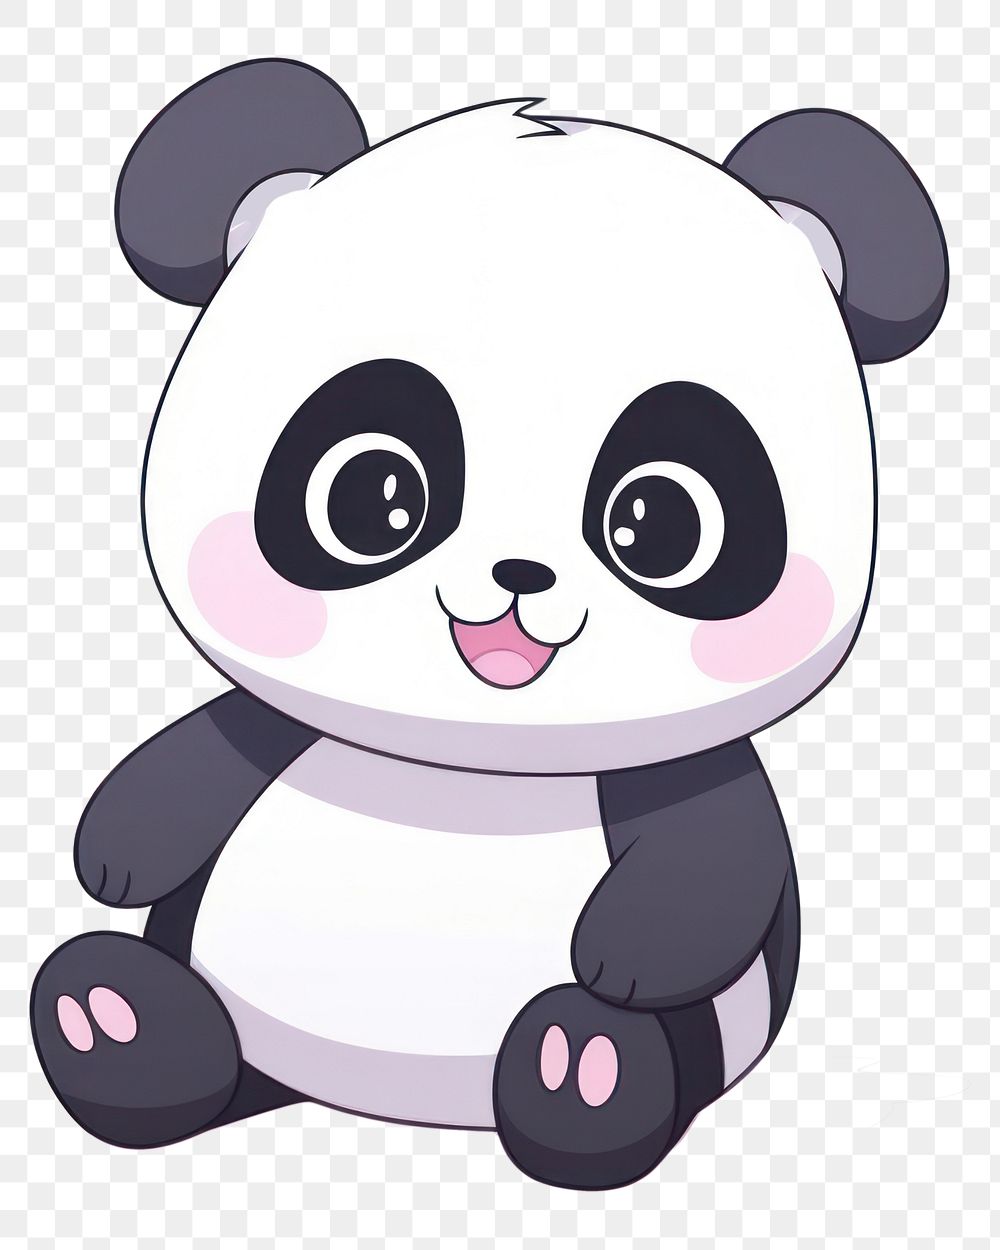 Giant Panda cartoon style drawing panda cute.